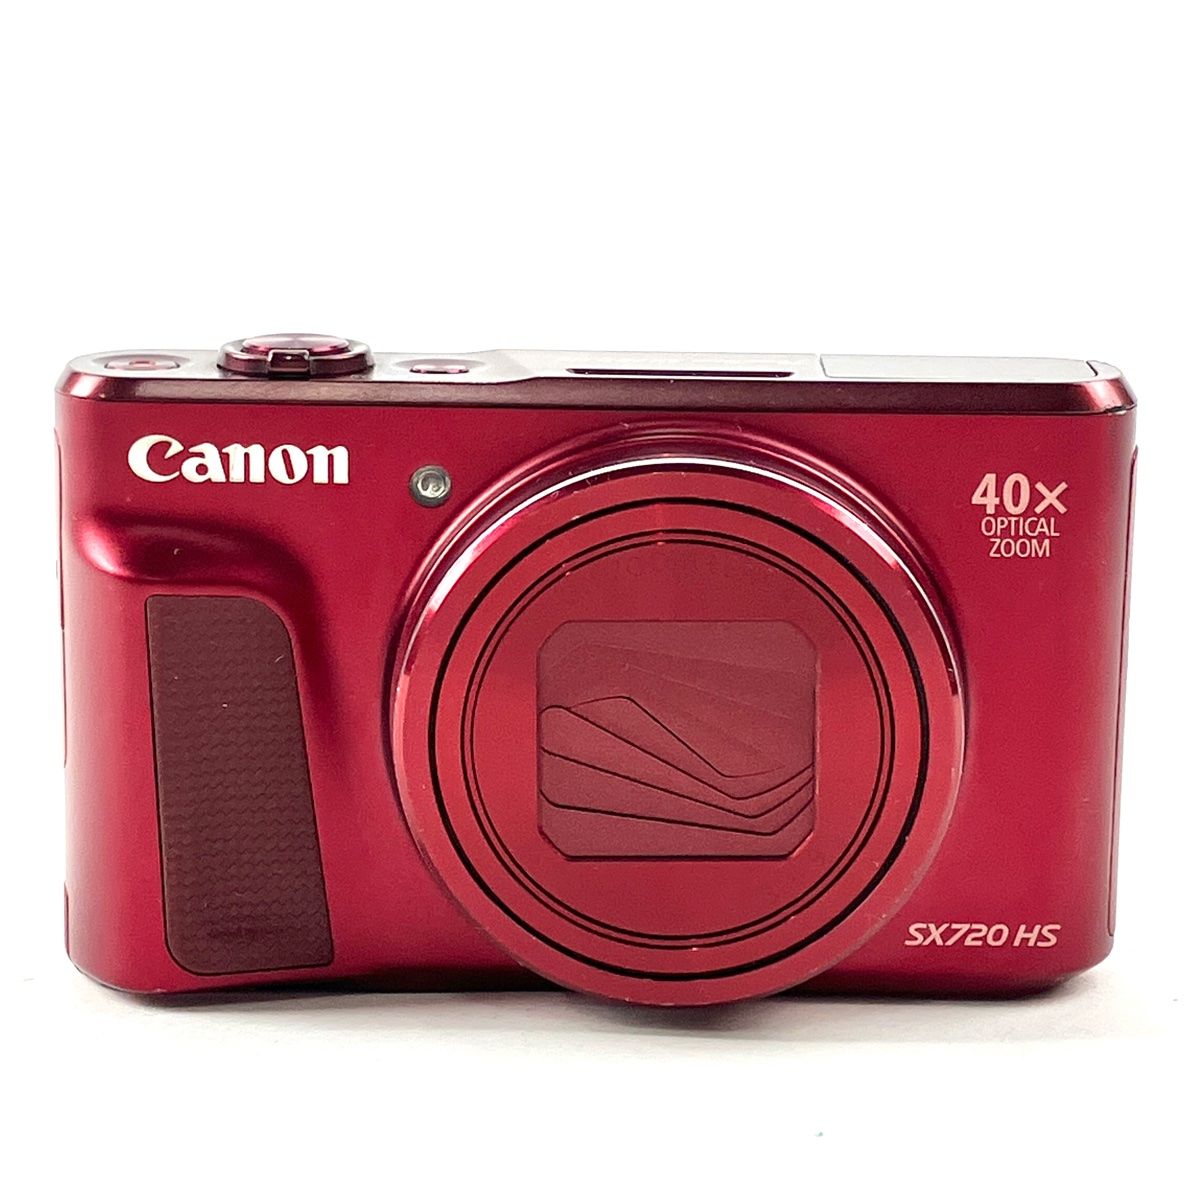 キヤノン Canon PowerShot SX720HS レッド 赤 コンパクトデジタル ...